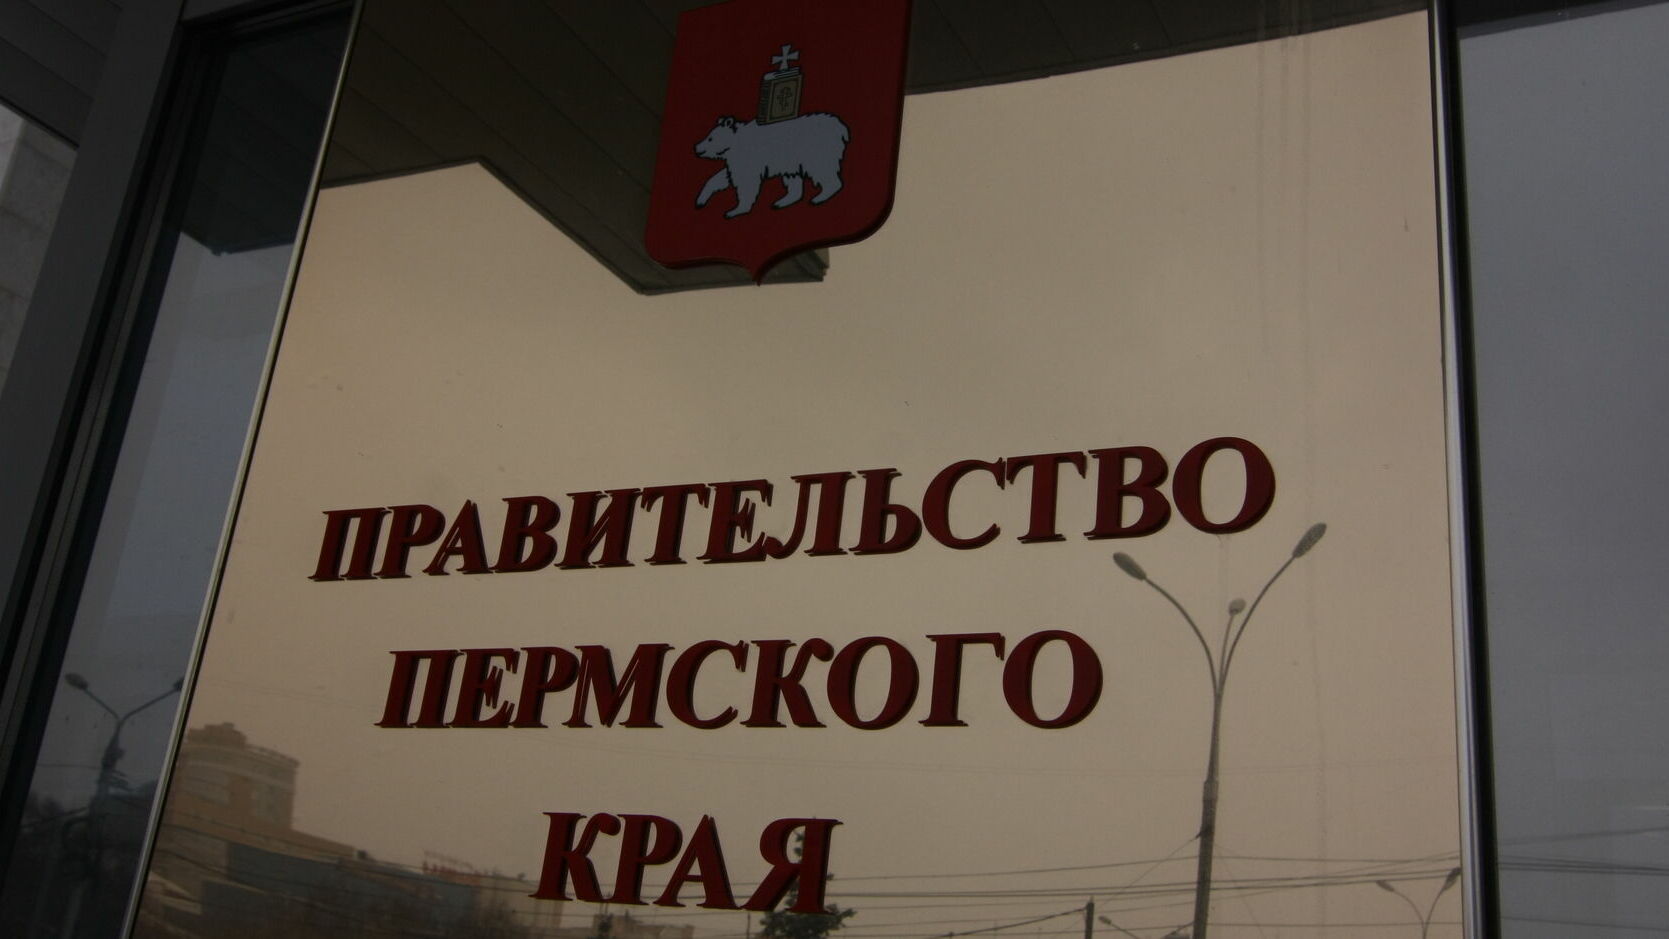 СМИ: Силовики проводят проверку в правительстве Пермского края